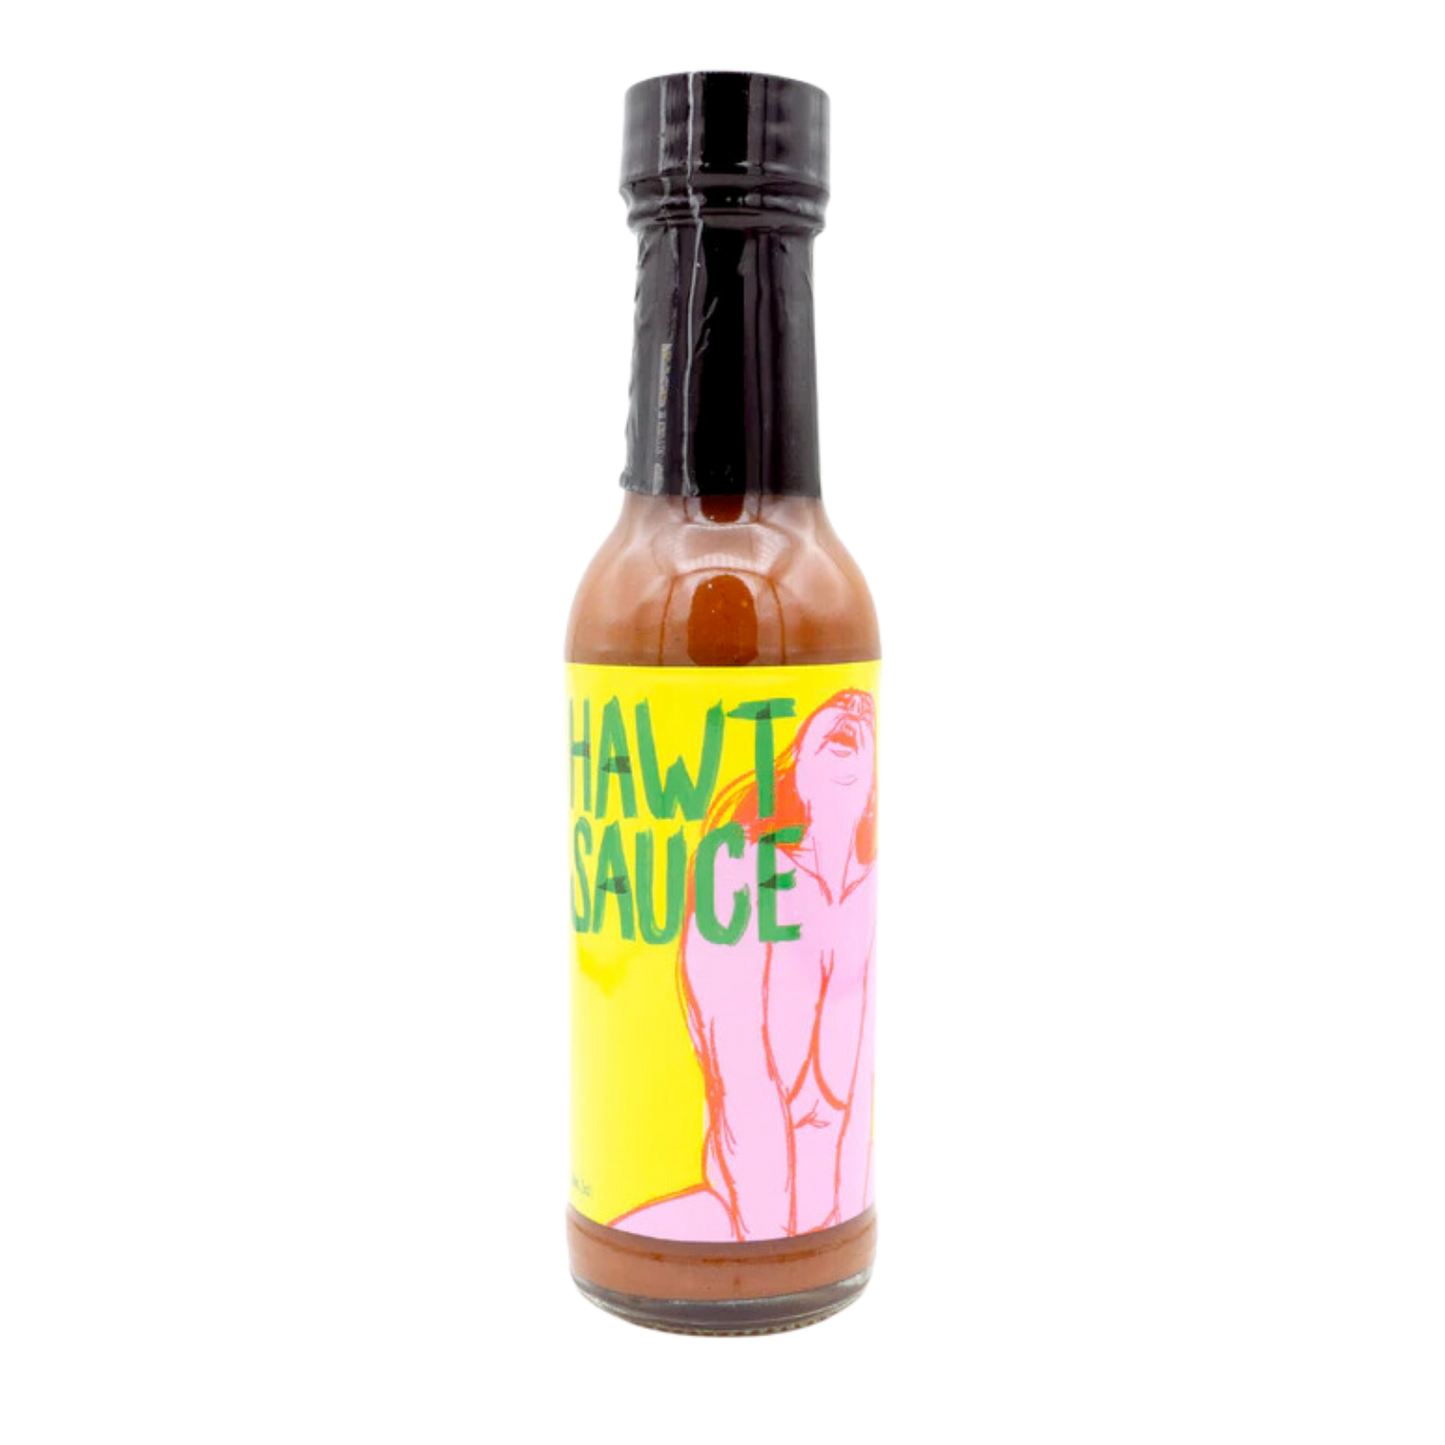 Derek's Hawt Sauce